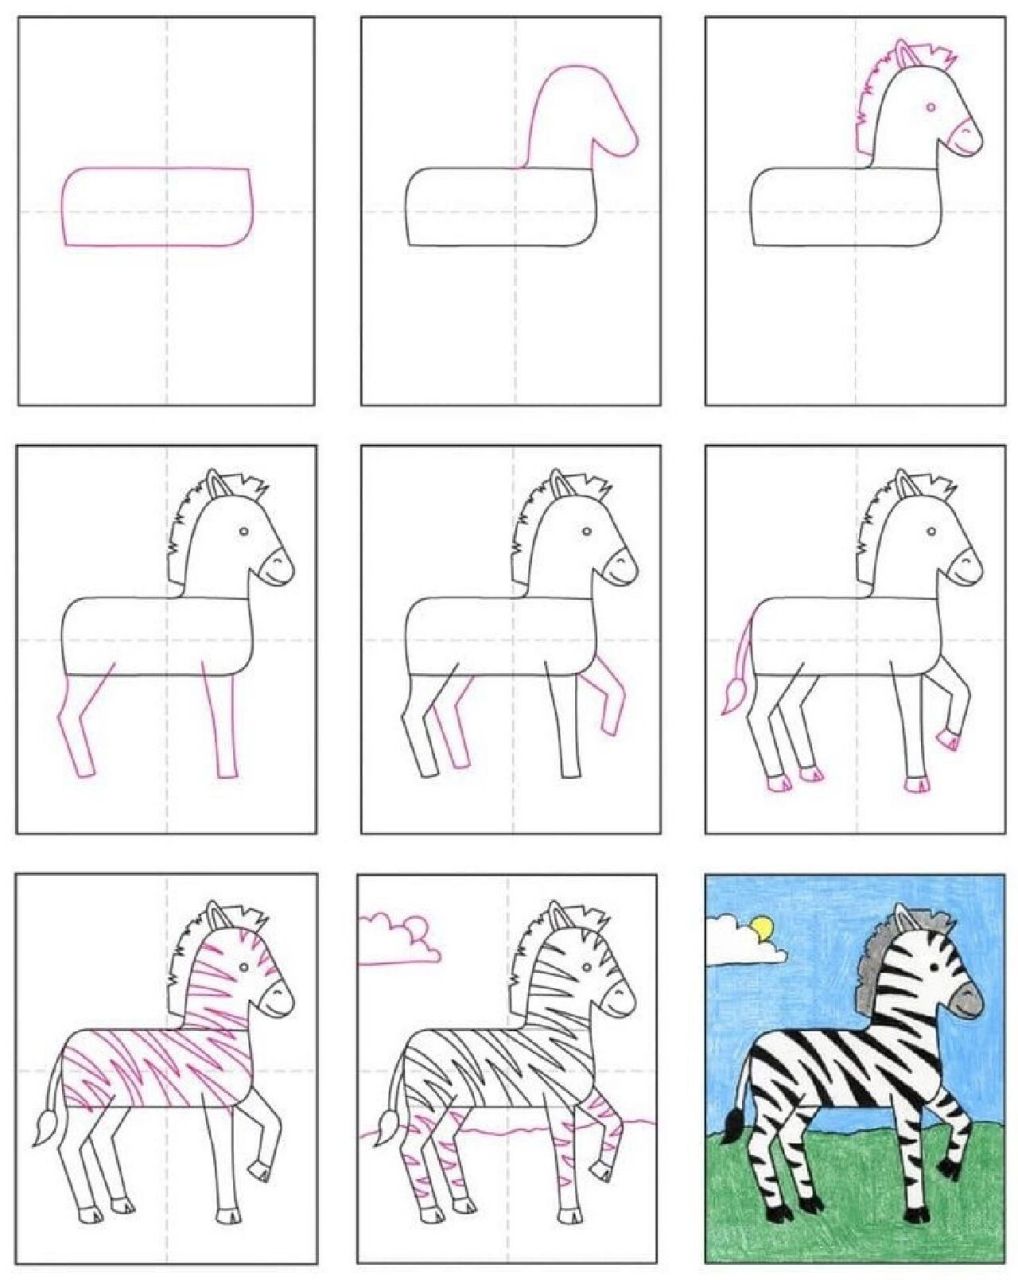 斑马简笔画 简化图片